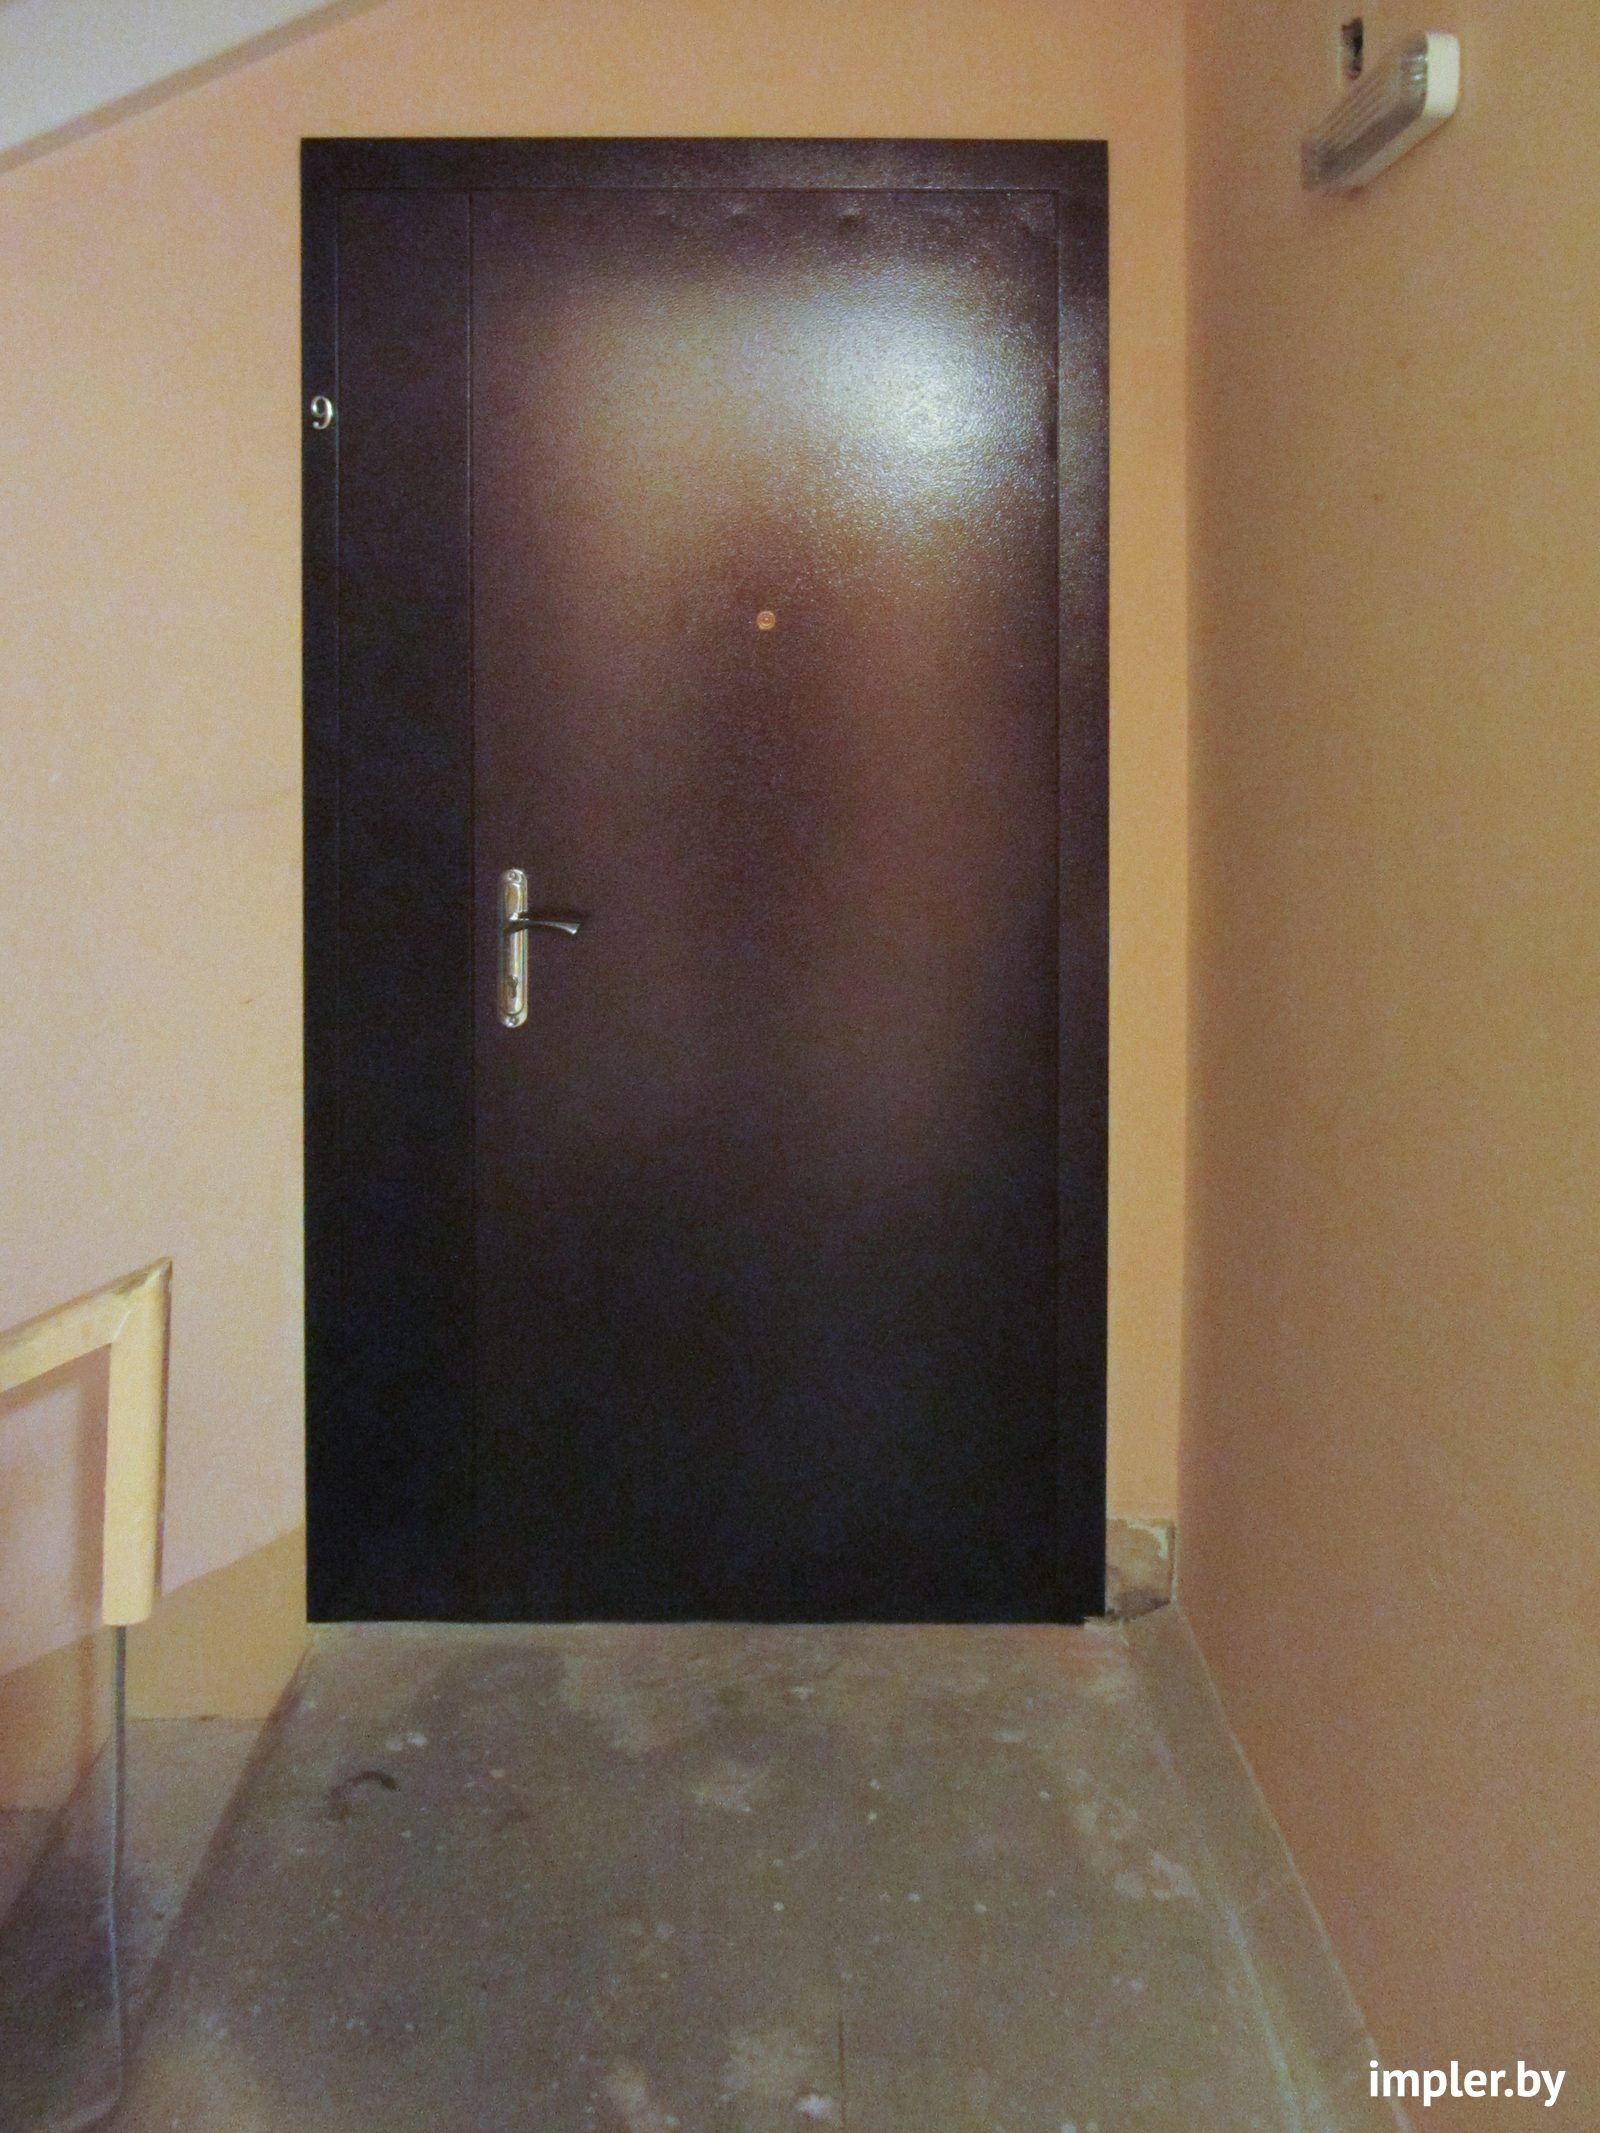 Тамбурная металлическая дверь, Полоцк, ERG.BY